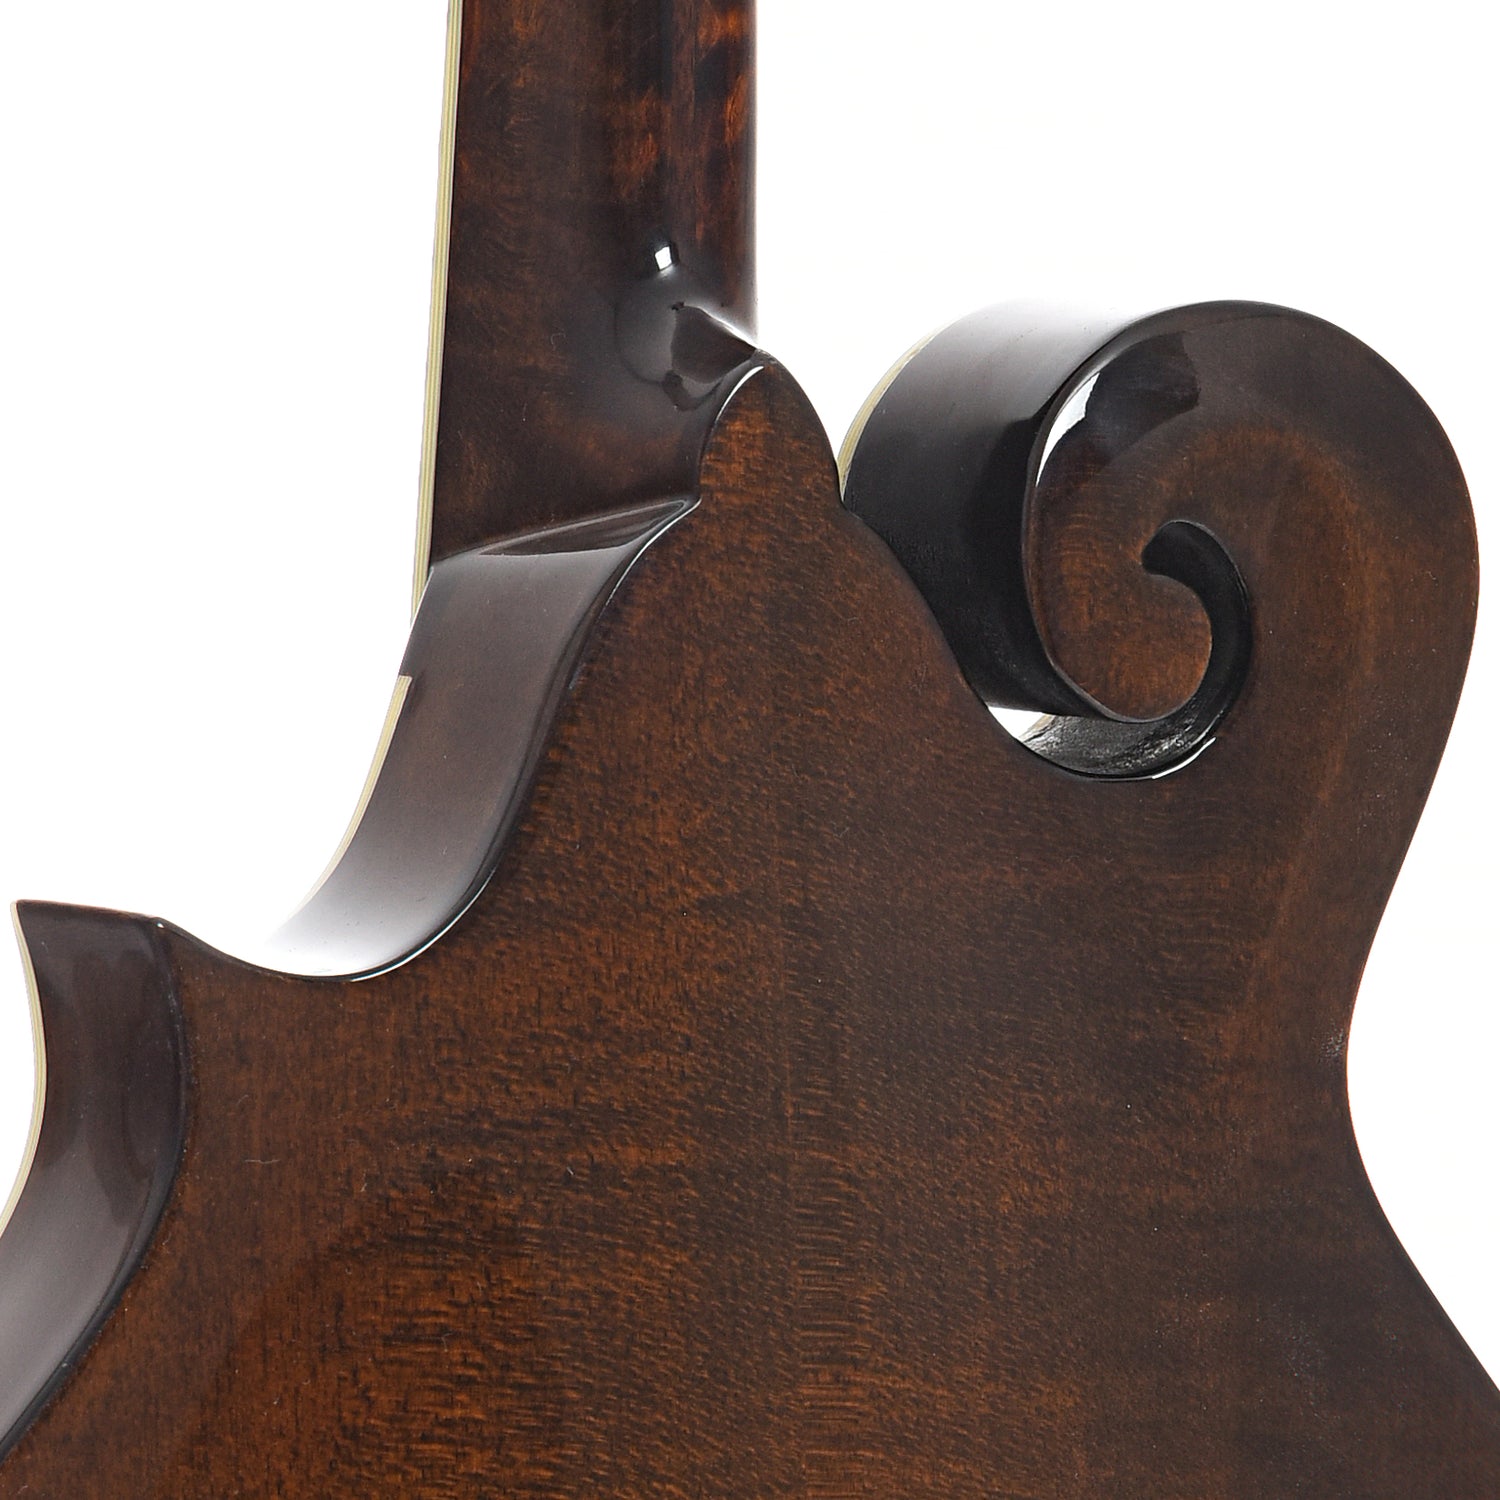 Heel of Eastman MD514 Classic Mandolin